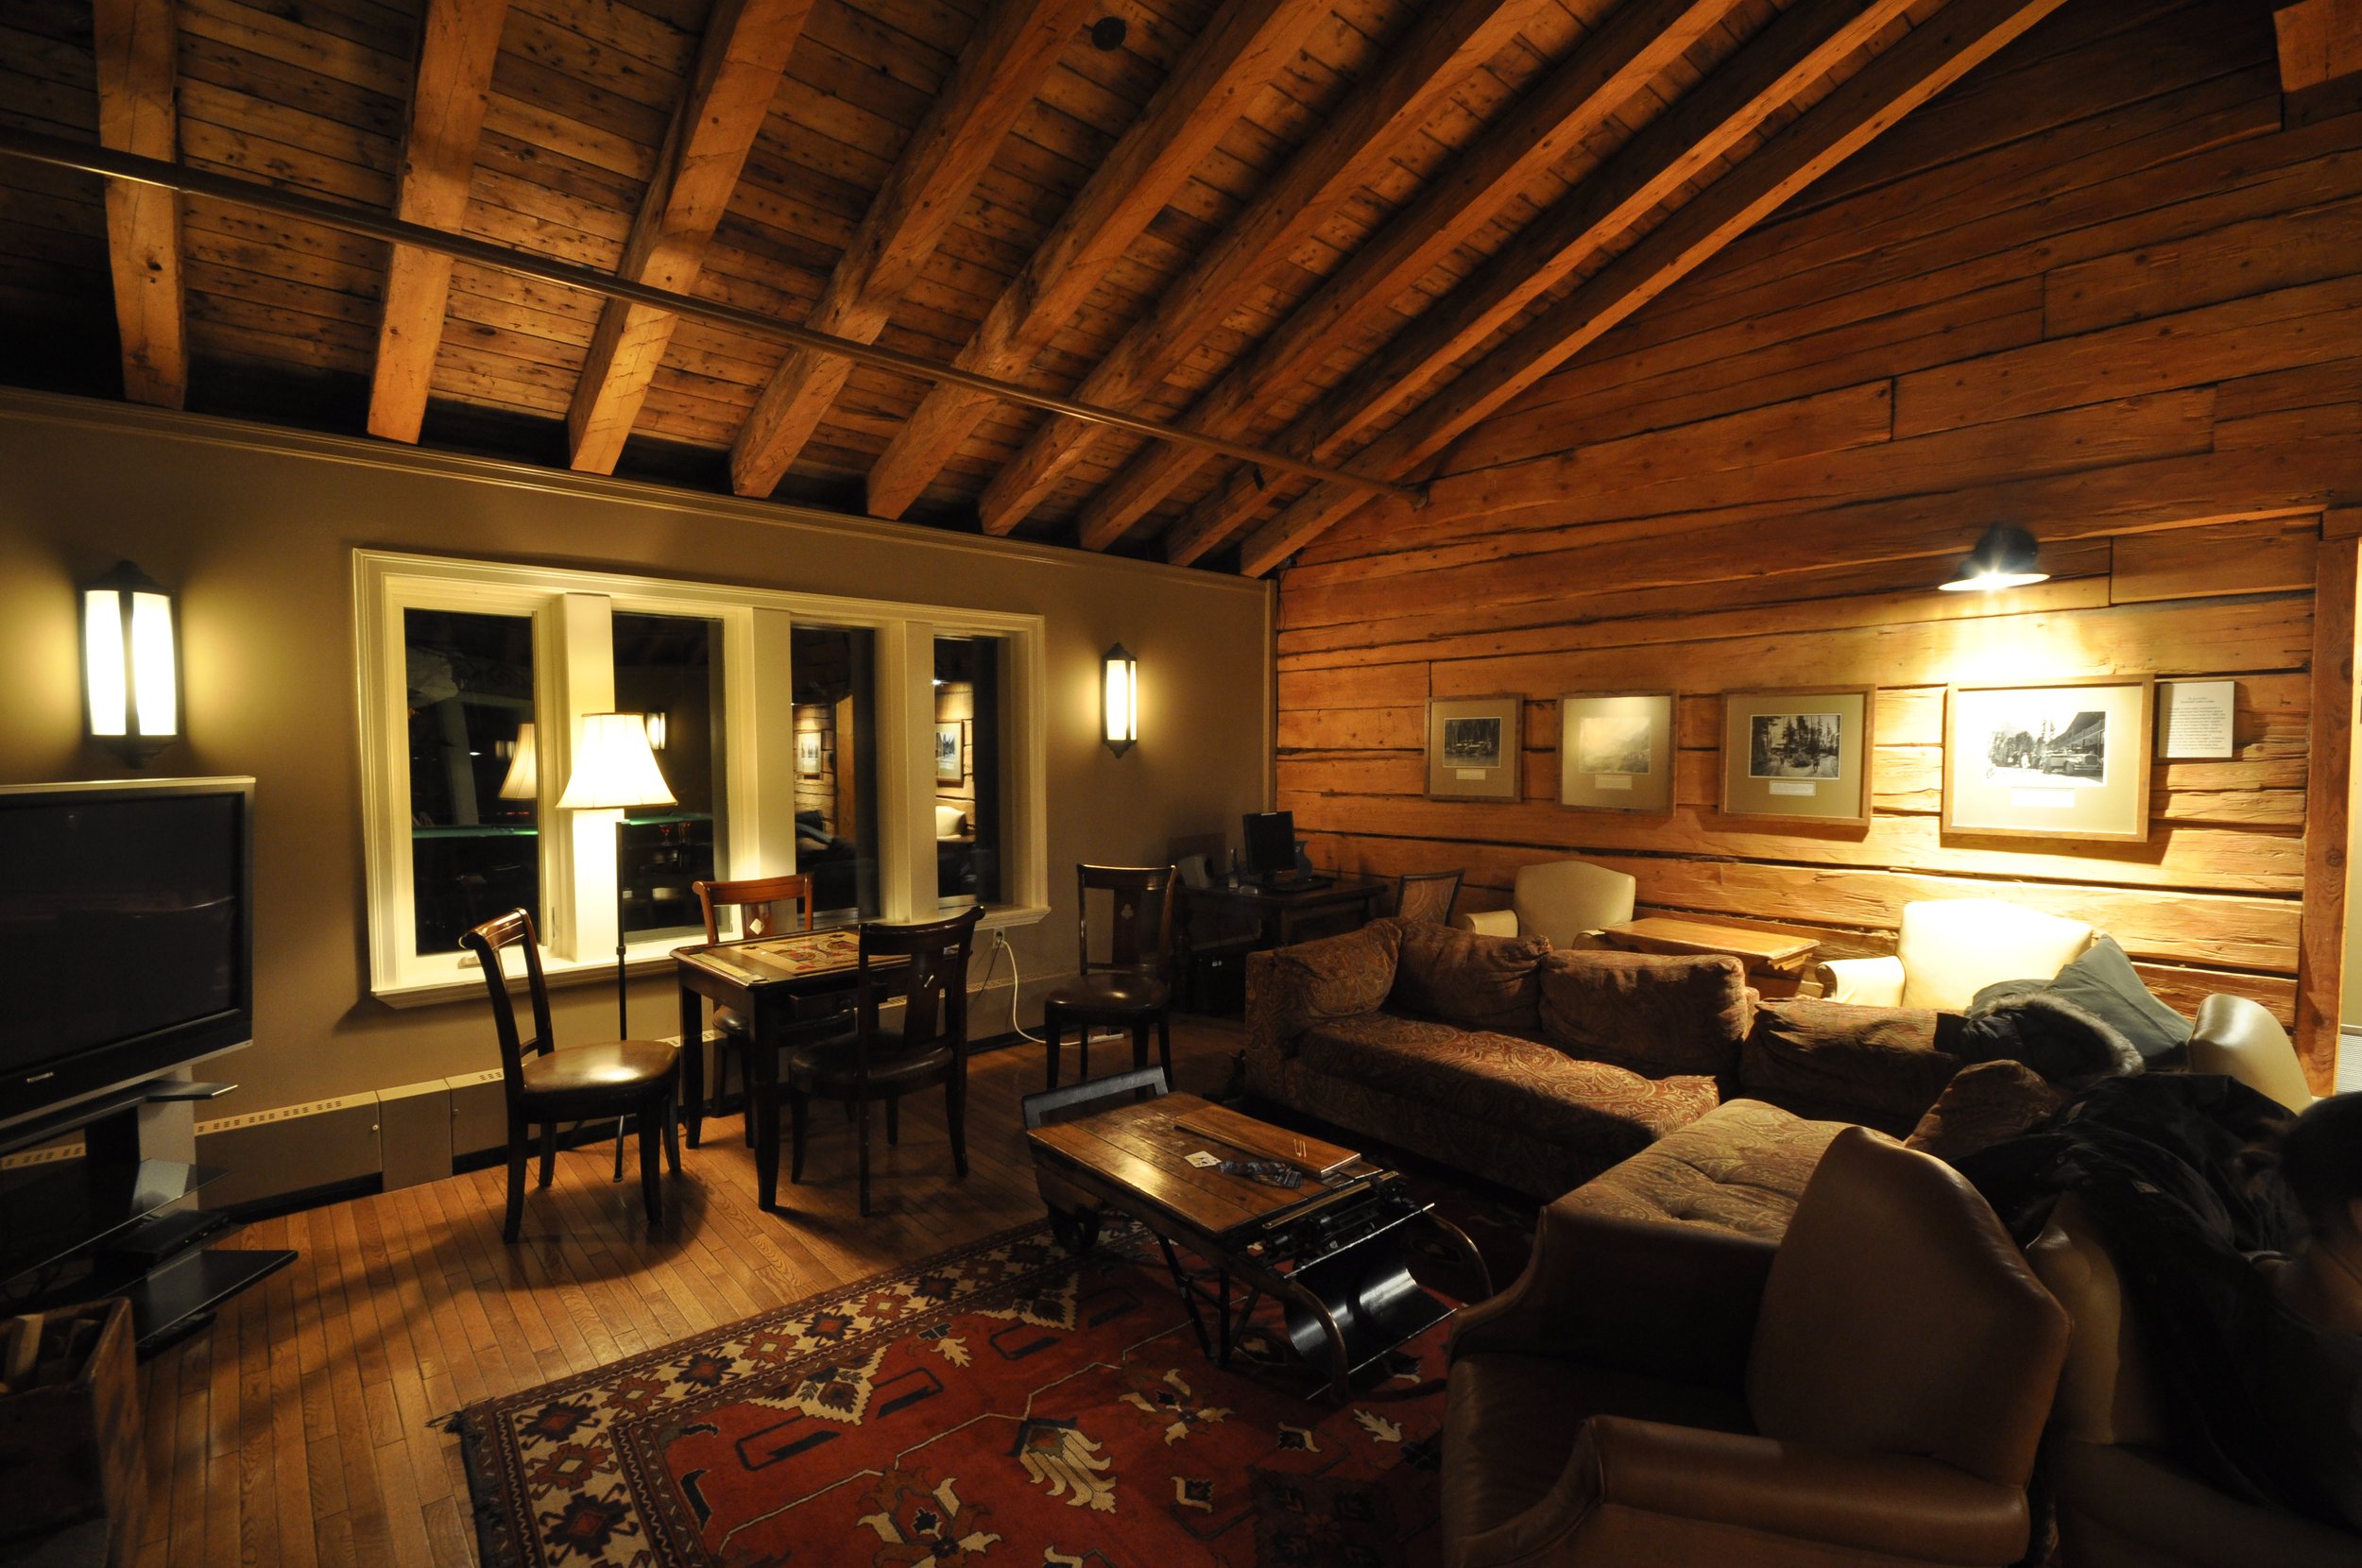  Upstairs interior at Emerald Lake Lodge. Photo by Tera Swanson 